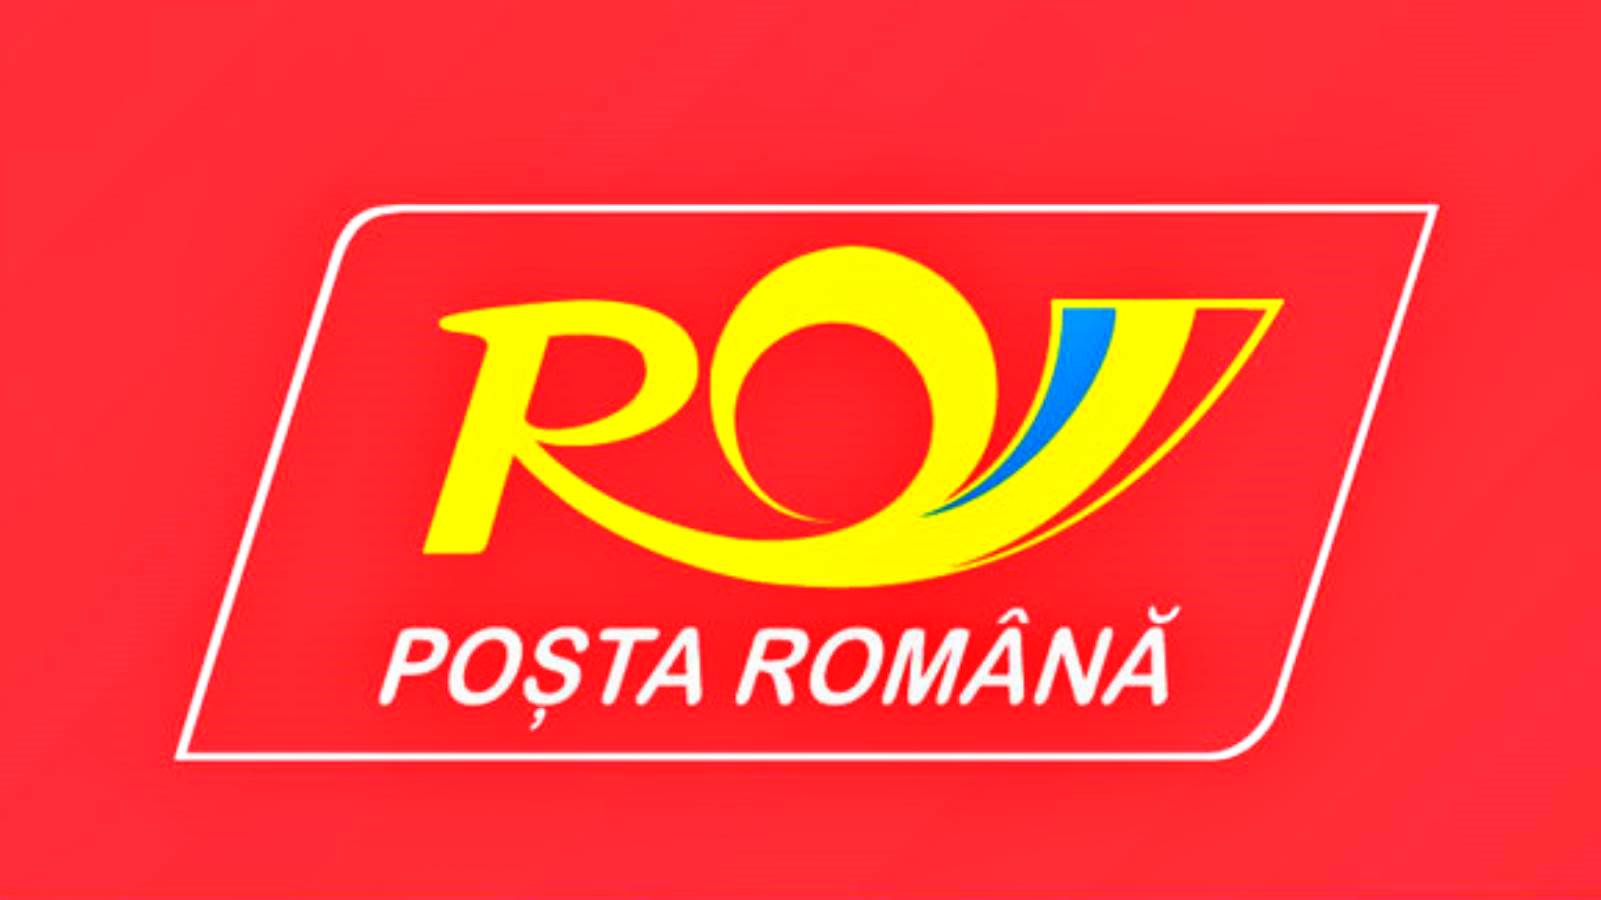 Misure poste dalle Poste rumene per prevenire la diffusione del coronavirus